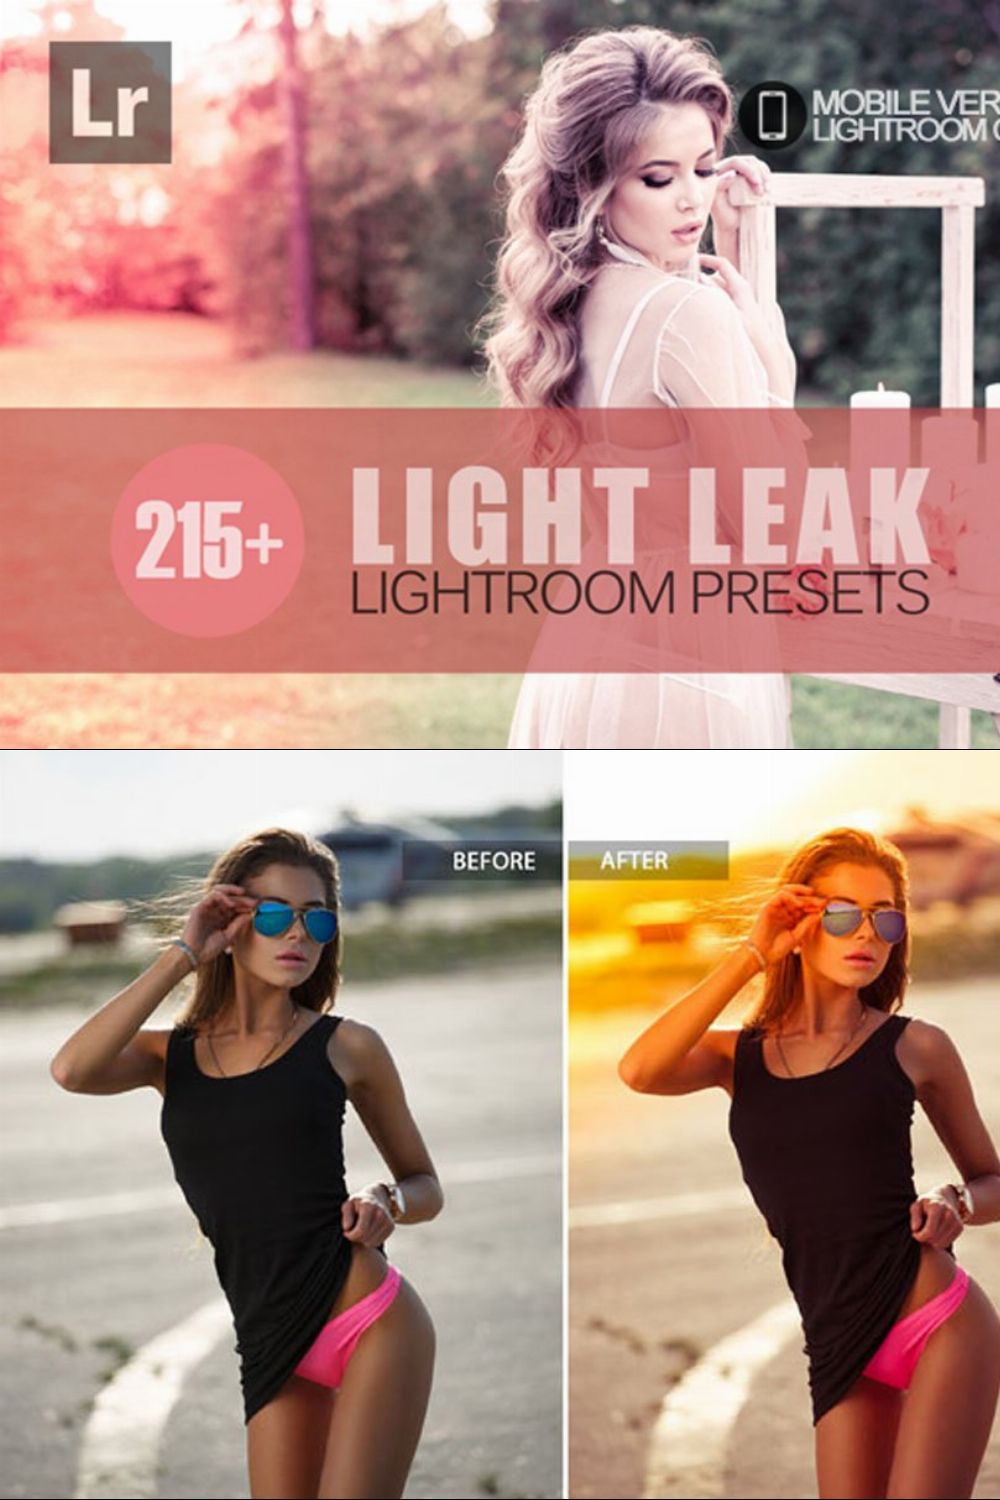 Light Leak Lightroom Mobile Presets pinterest preview image.